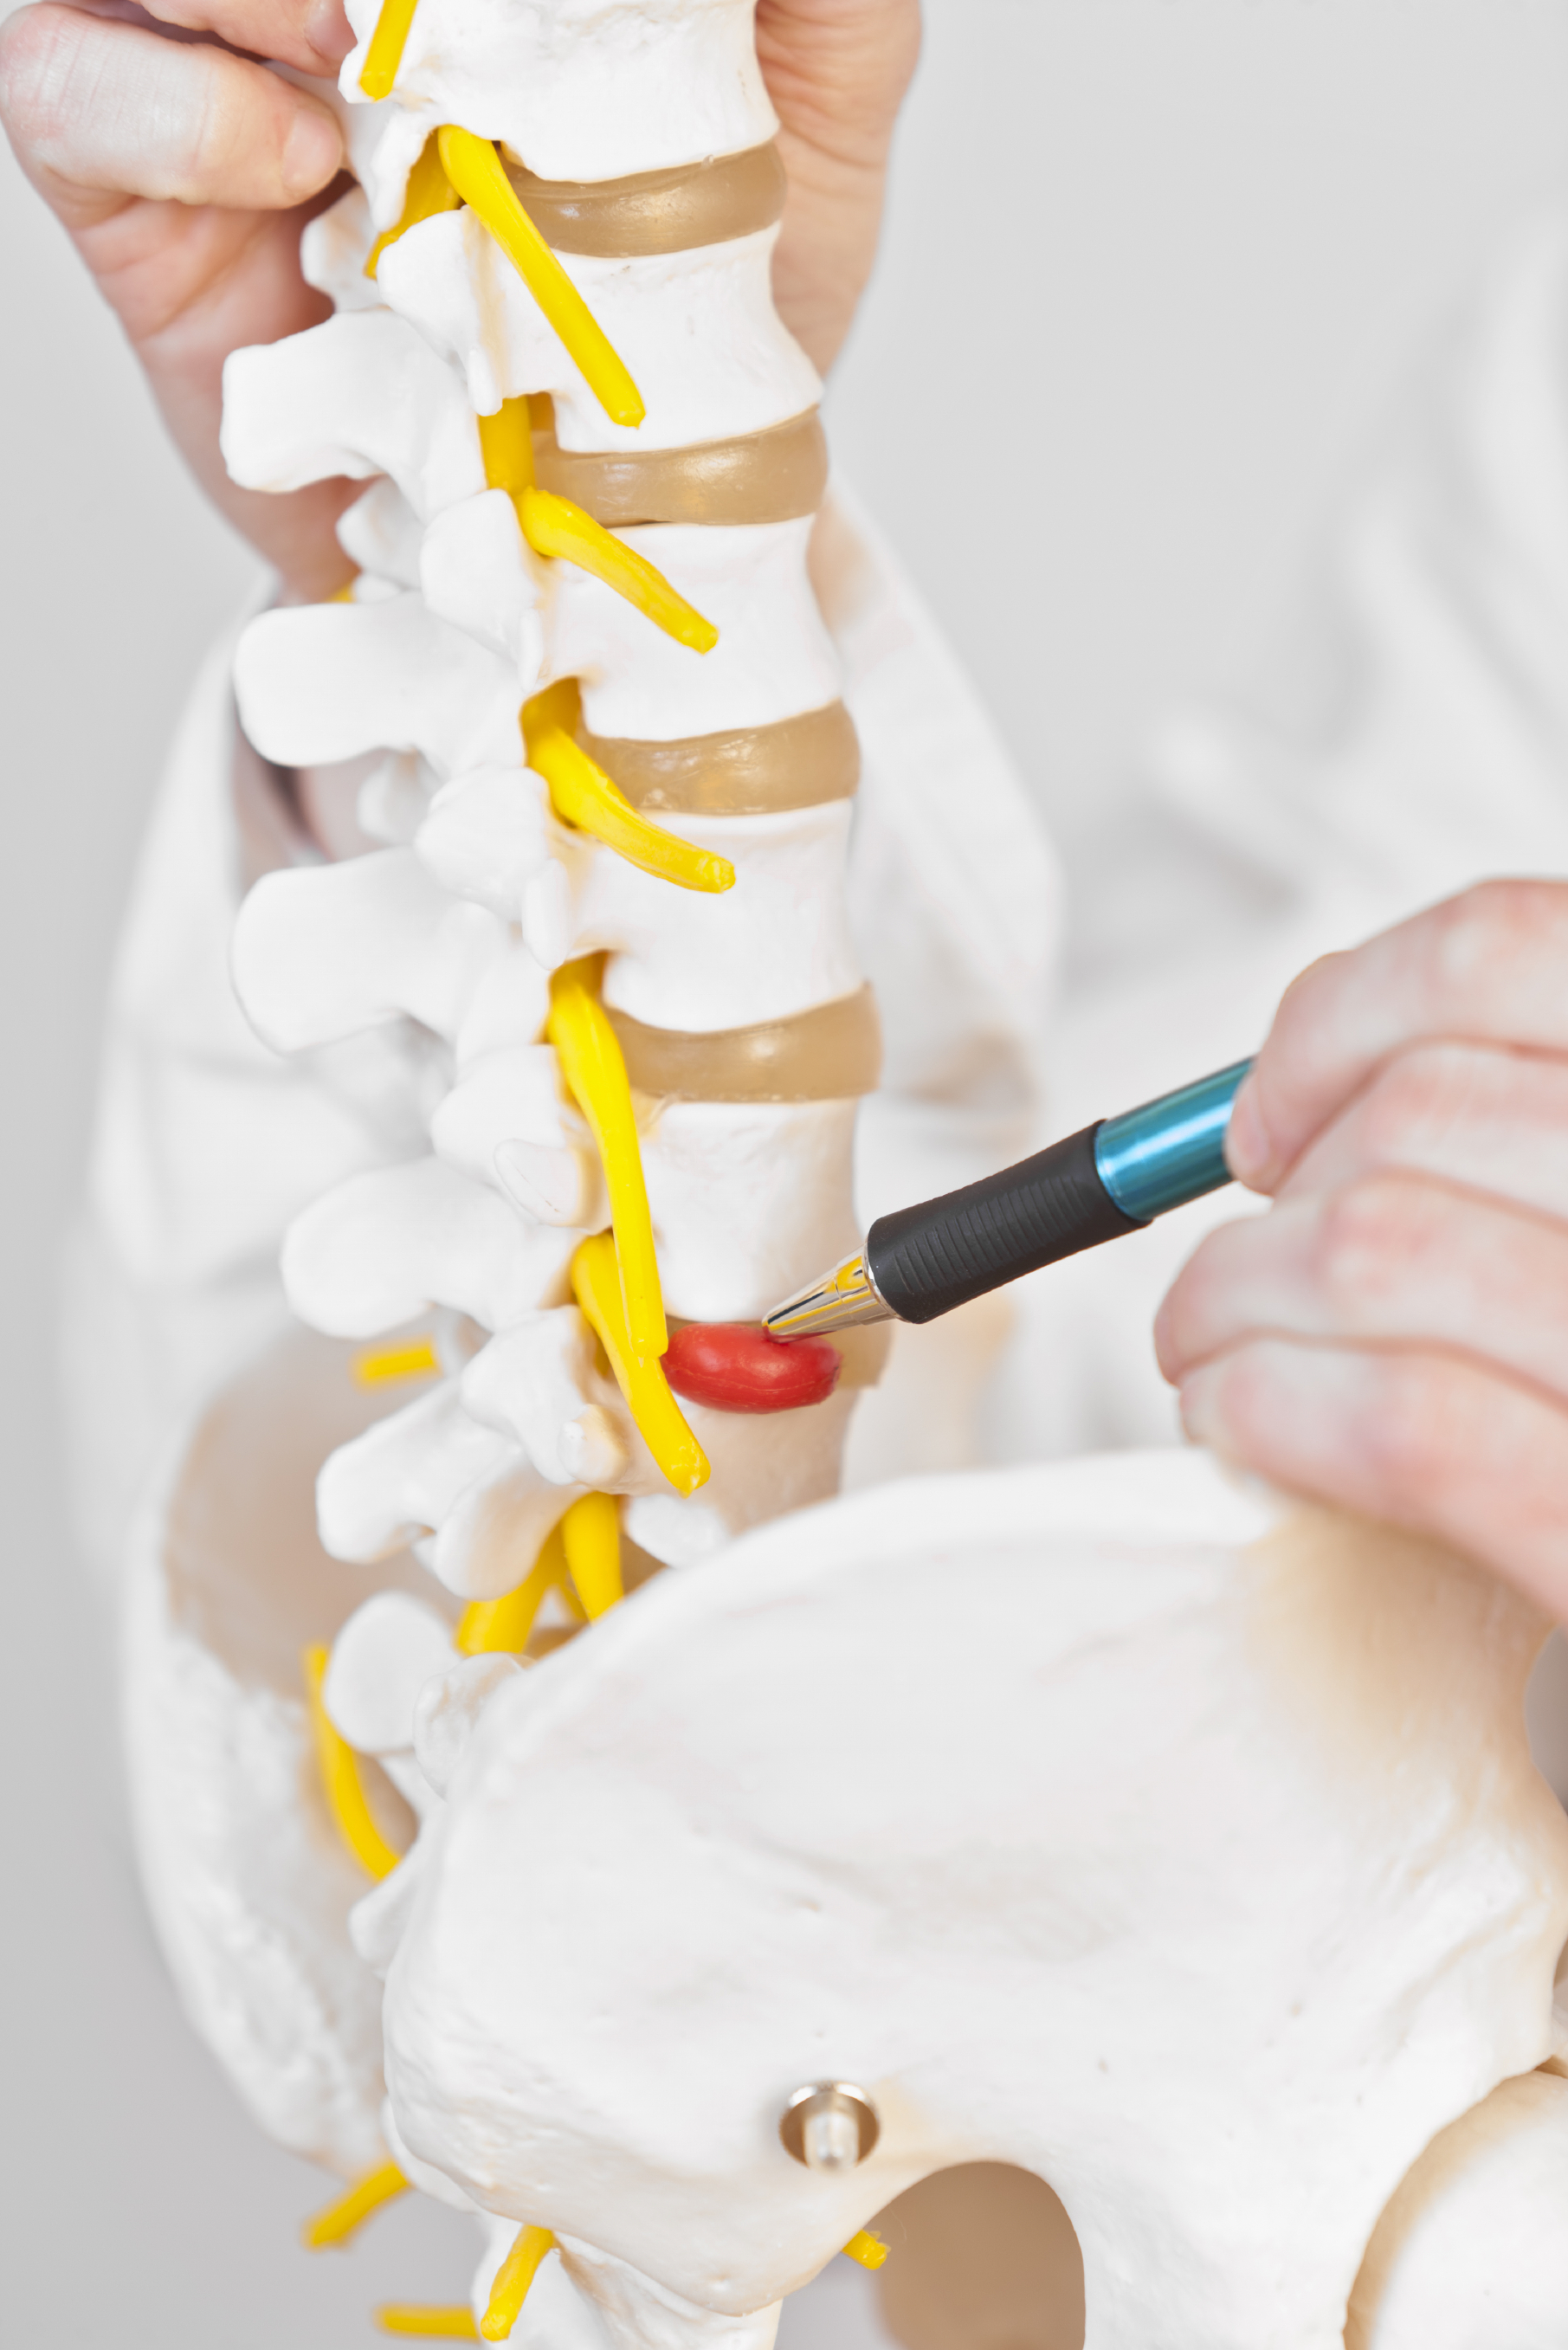 Spine Care Sports Medicine Services Aosmi